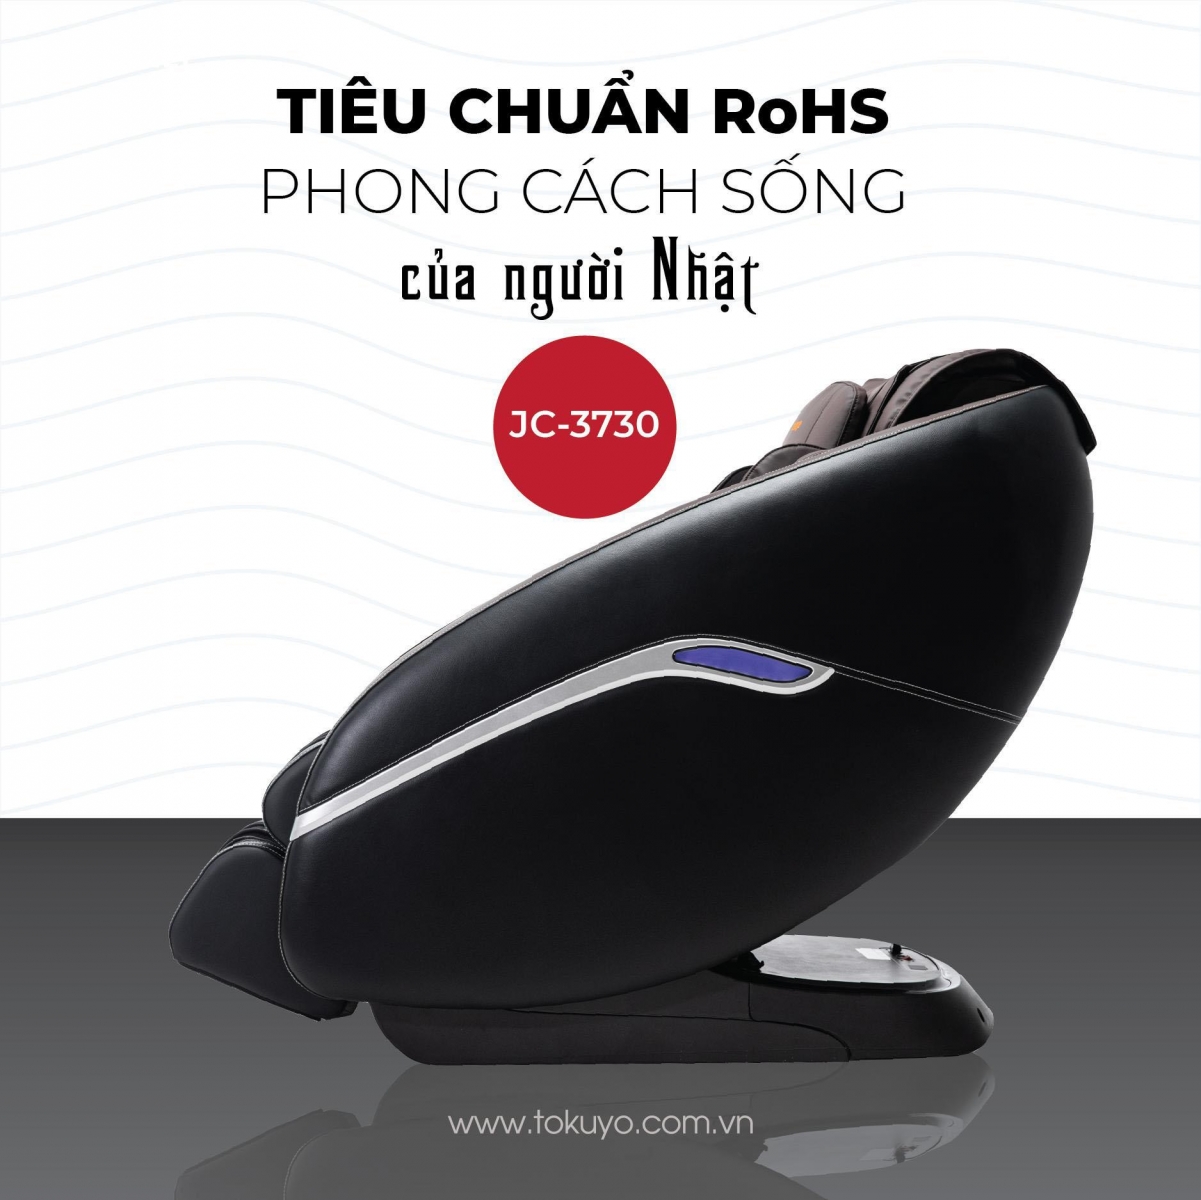 Tokuyo - Thương hiệu ghế massage uy tín, chất lượng